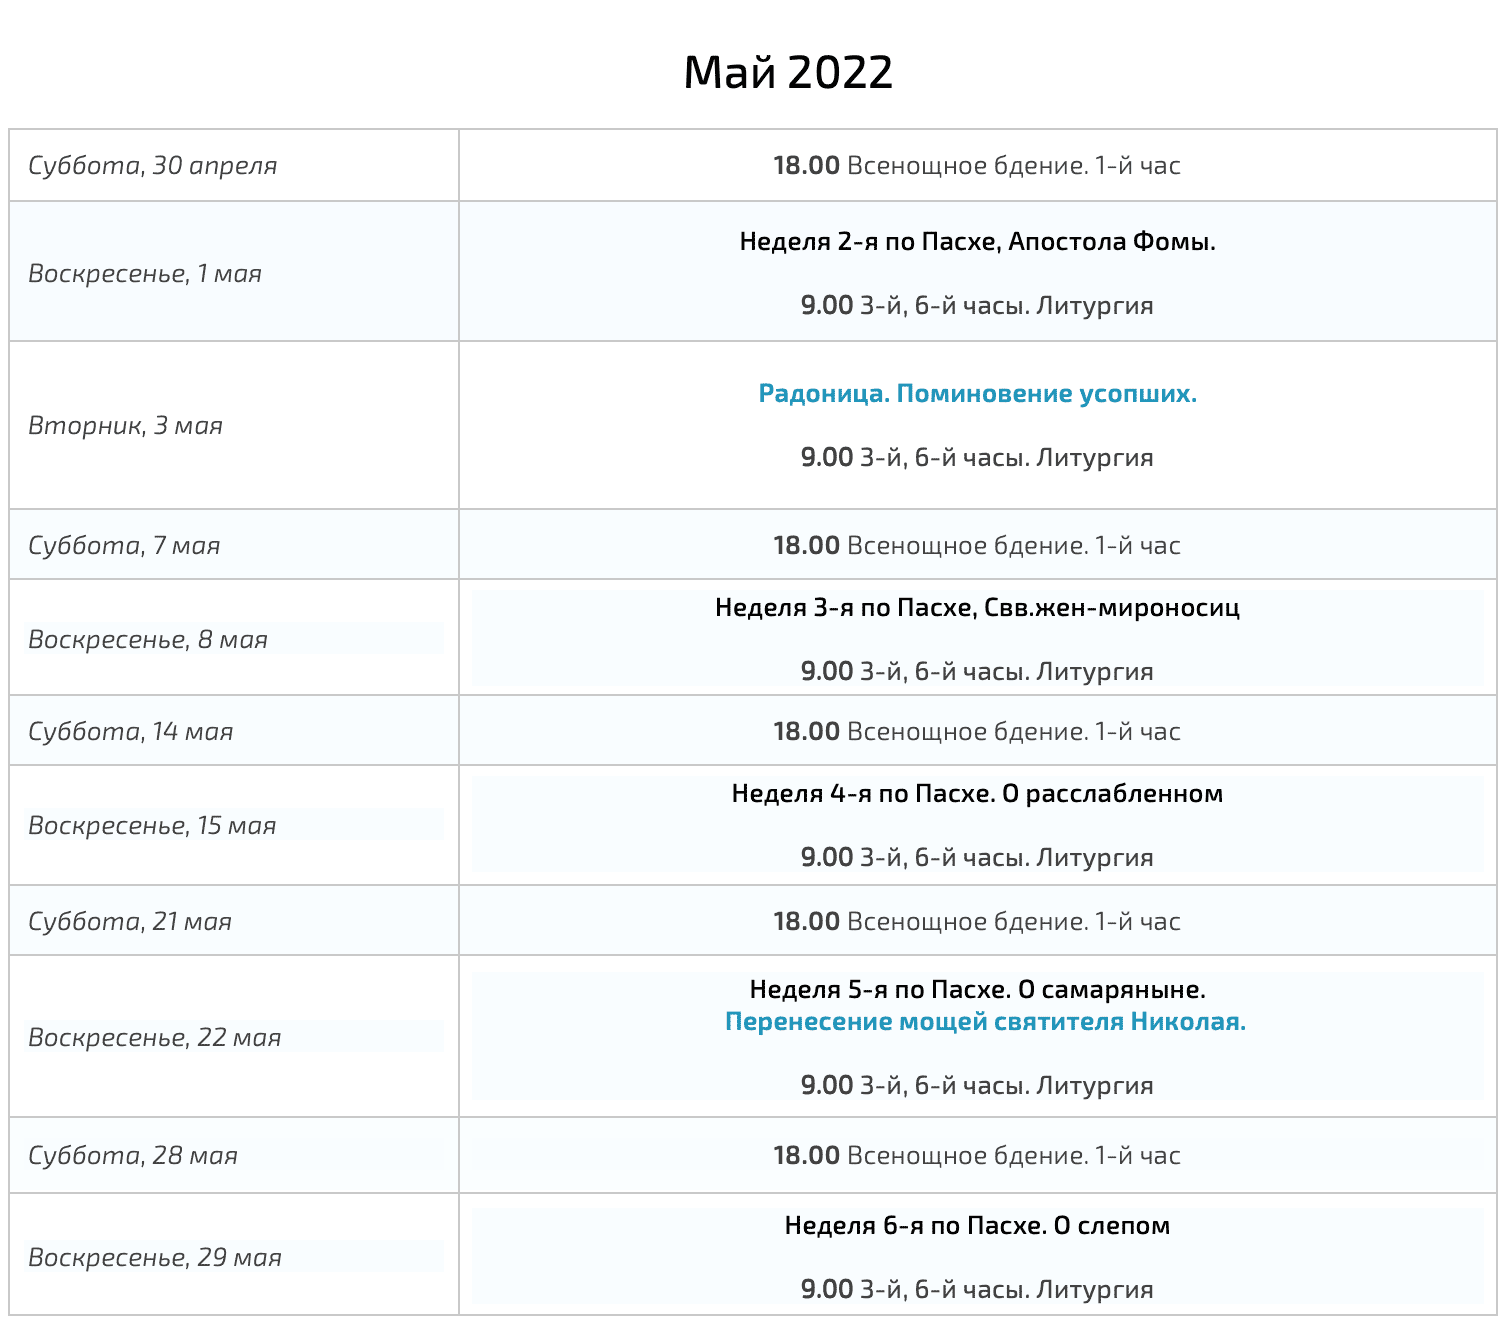 Май, 2022